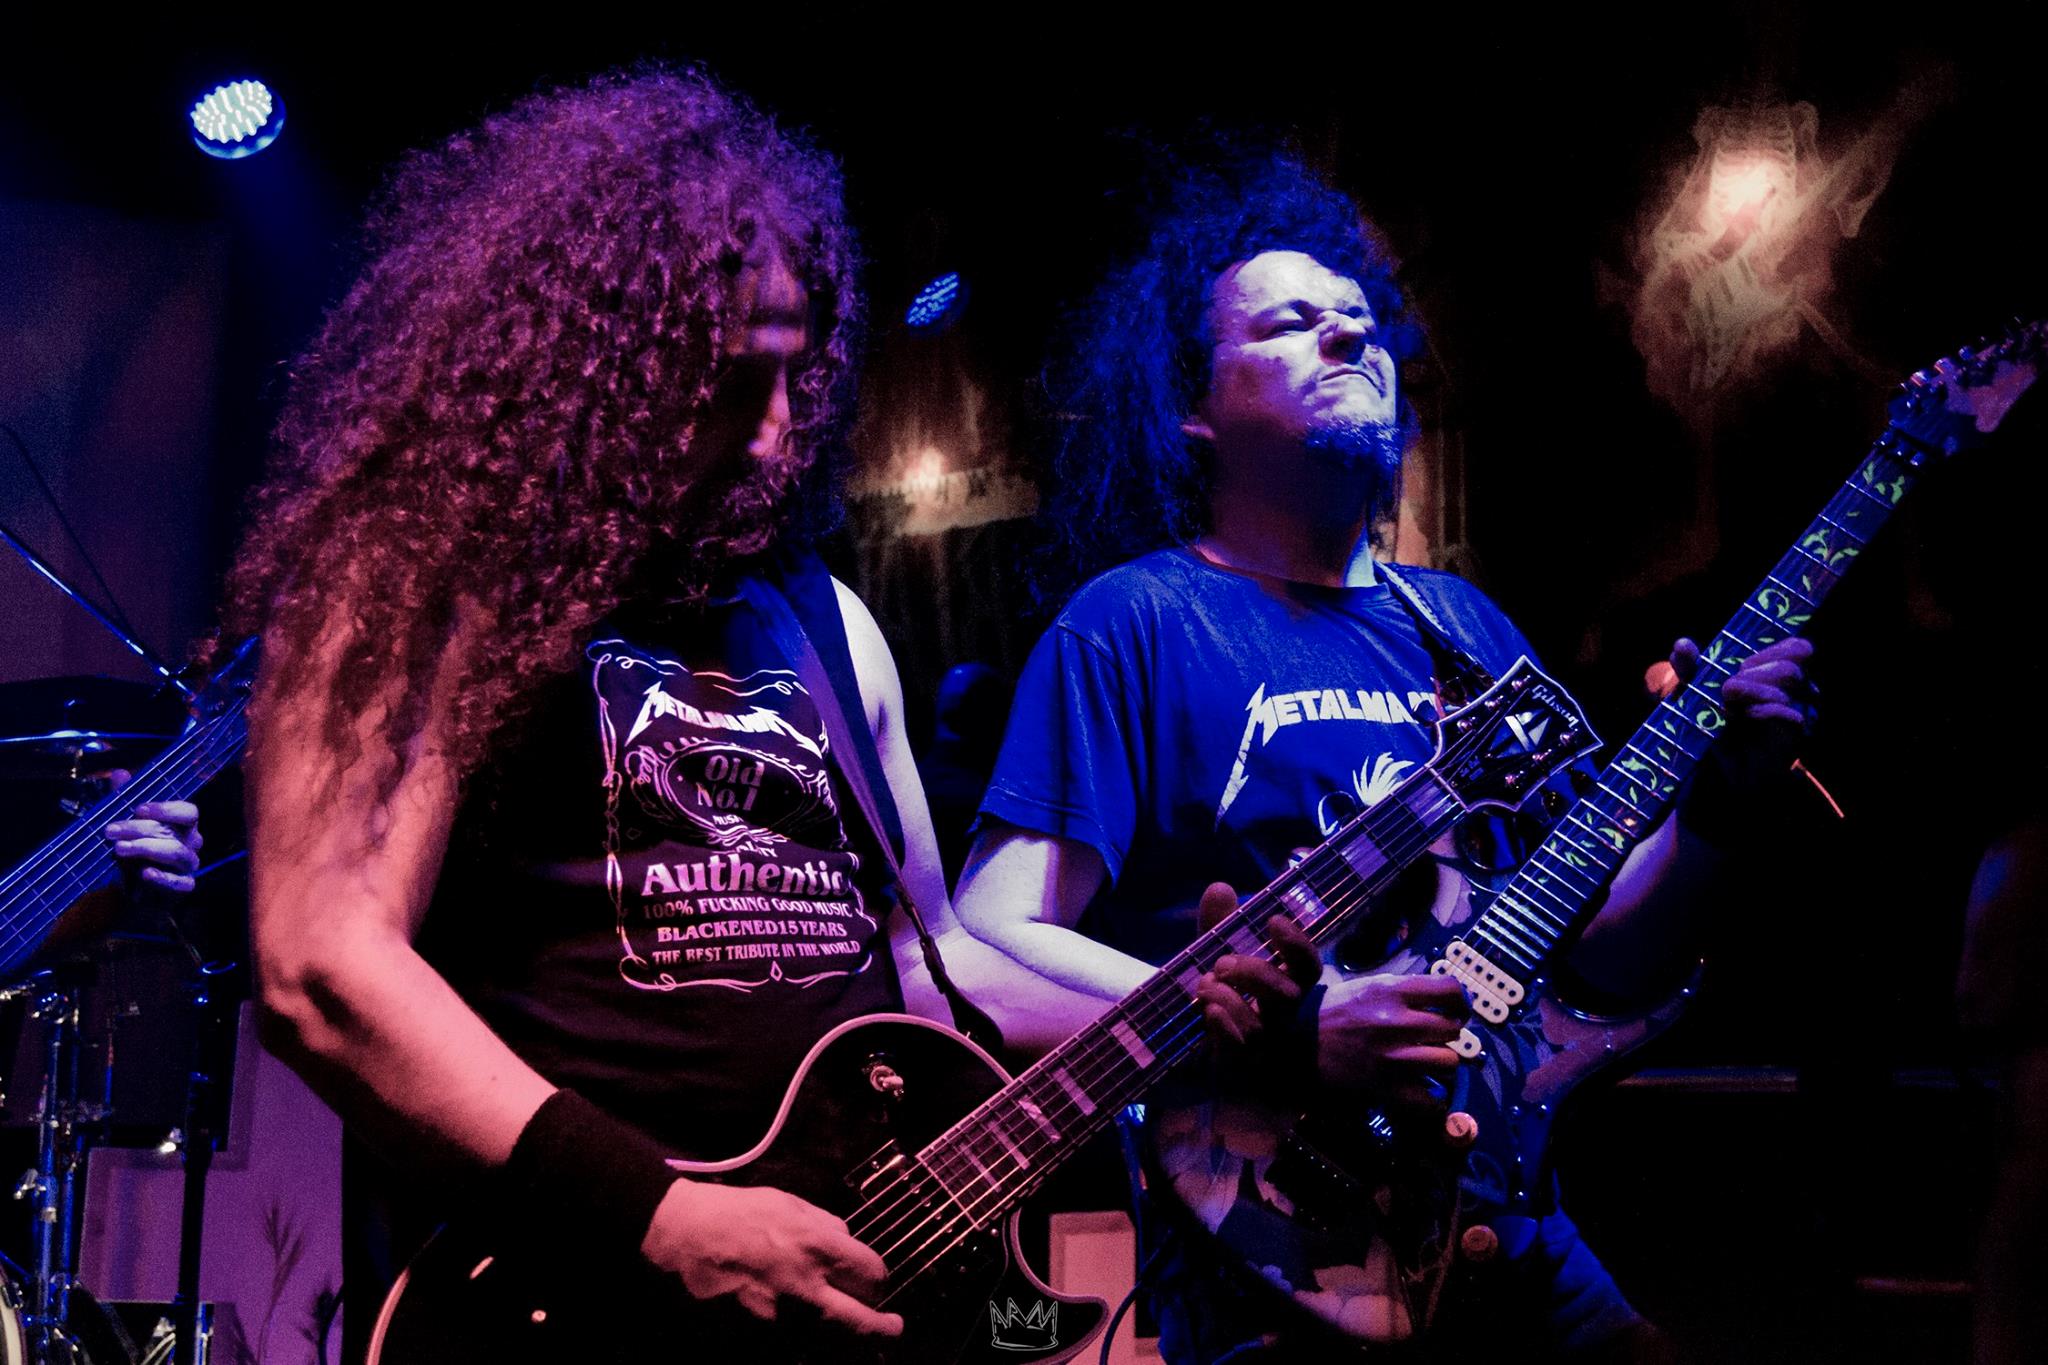 El tributo a Metallica Metalmanía pasará por Granada el próximo 22 de Septiembre